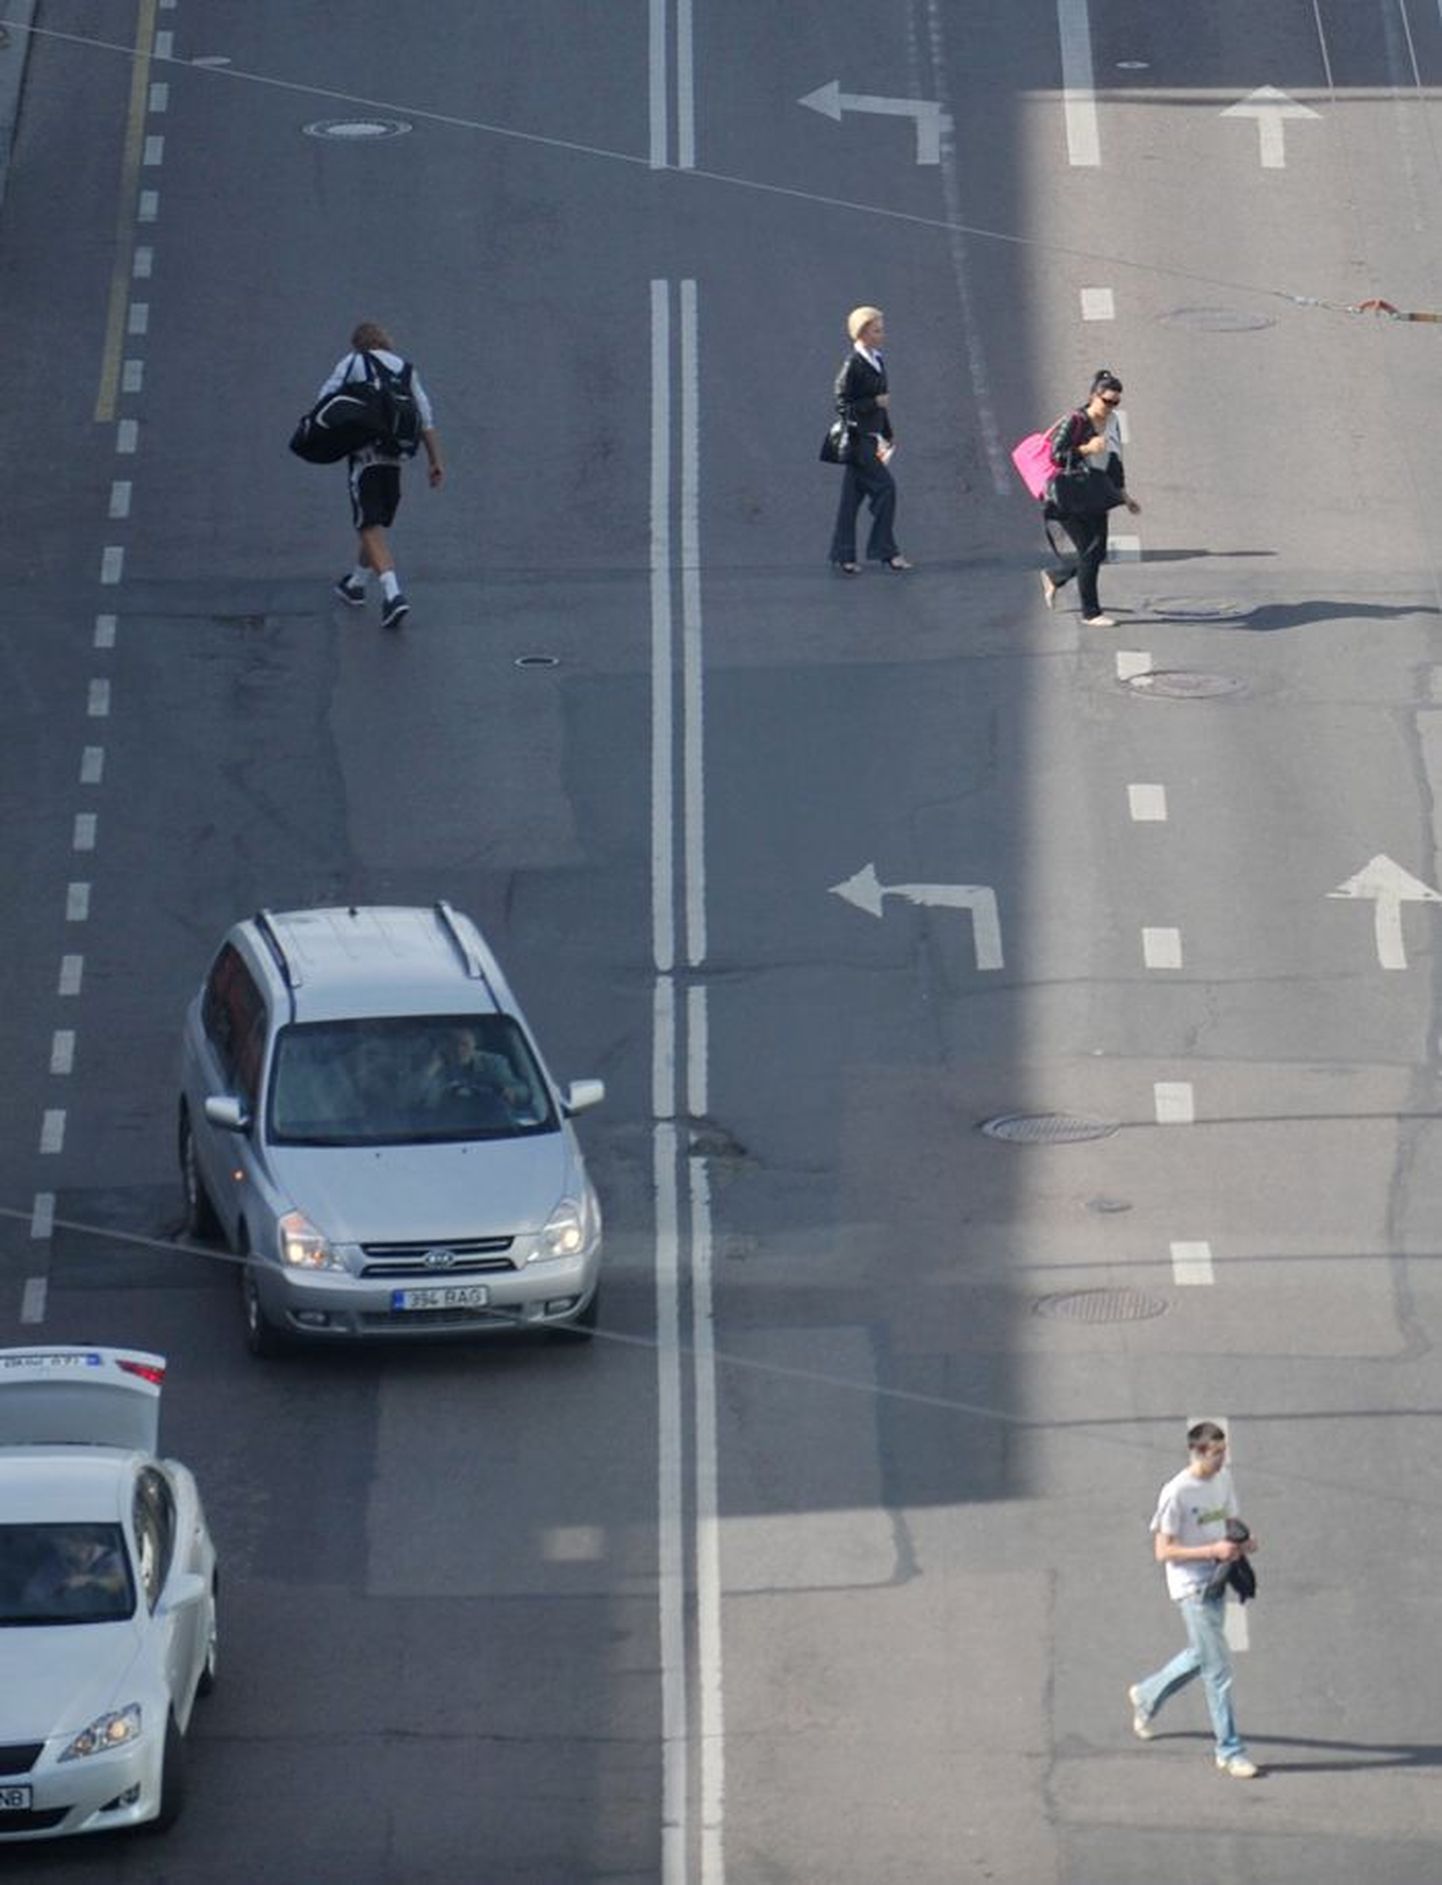 Tallinna kaubamaja kõrval Laikmaa tänaval ületavad jalakäijad pidevalt sõiduteed kohas, kus seda ei tohiks. Kuigi nad teevad valesti, on neil õnnetuse korral õigus kindlustushüvitisele.